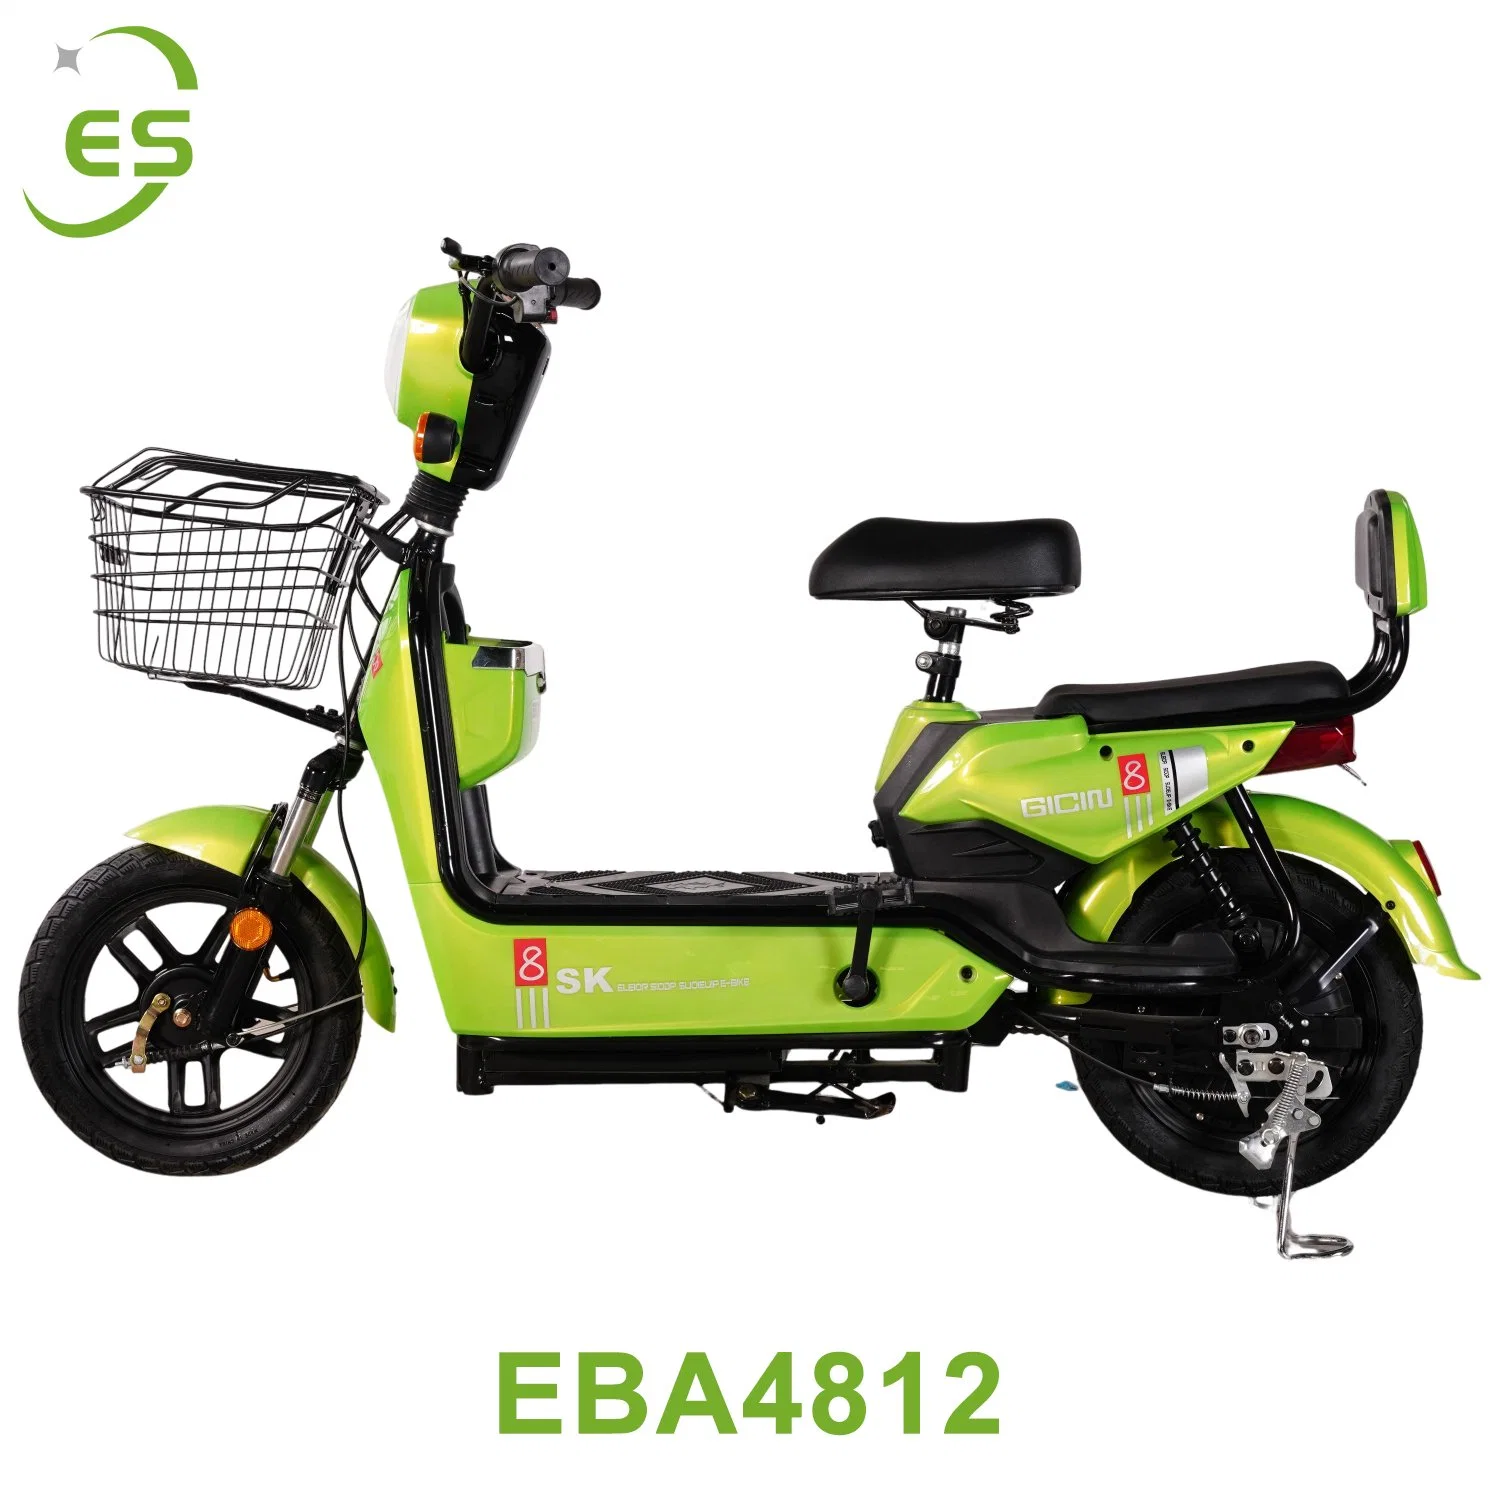 Original Factory produit des bicyclettes électriques peuvent être personnalisées pour produire Vente de vélos électriques neufs